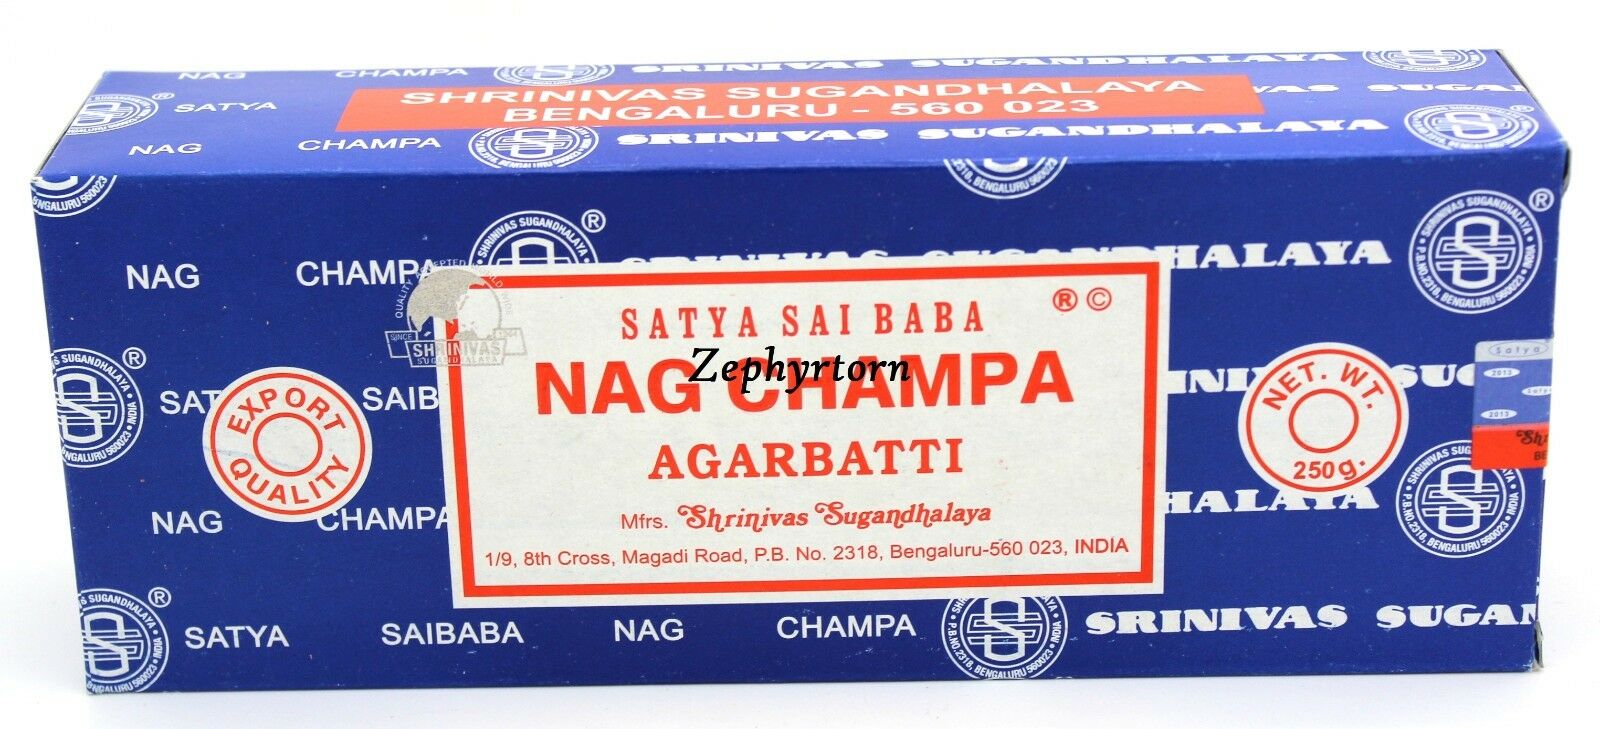 Nag Champa 250 Grams Box - New Original 2020 - Free Shipping